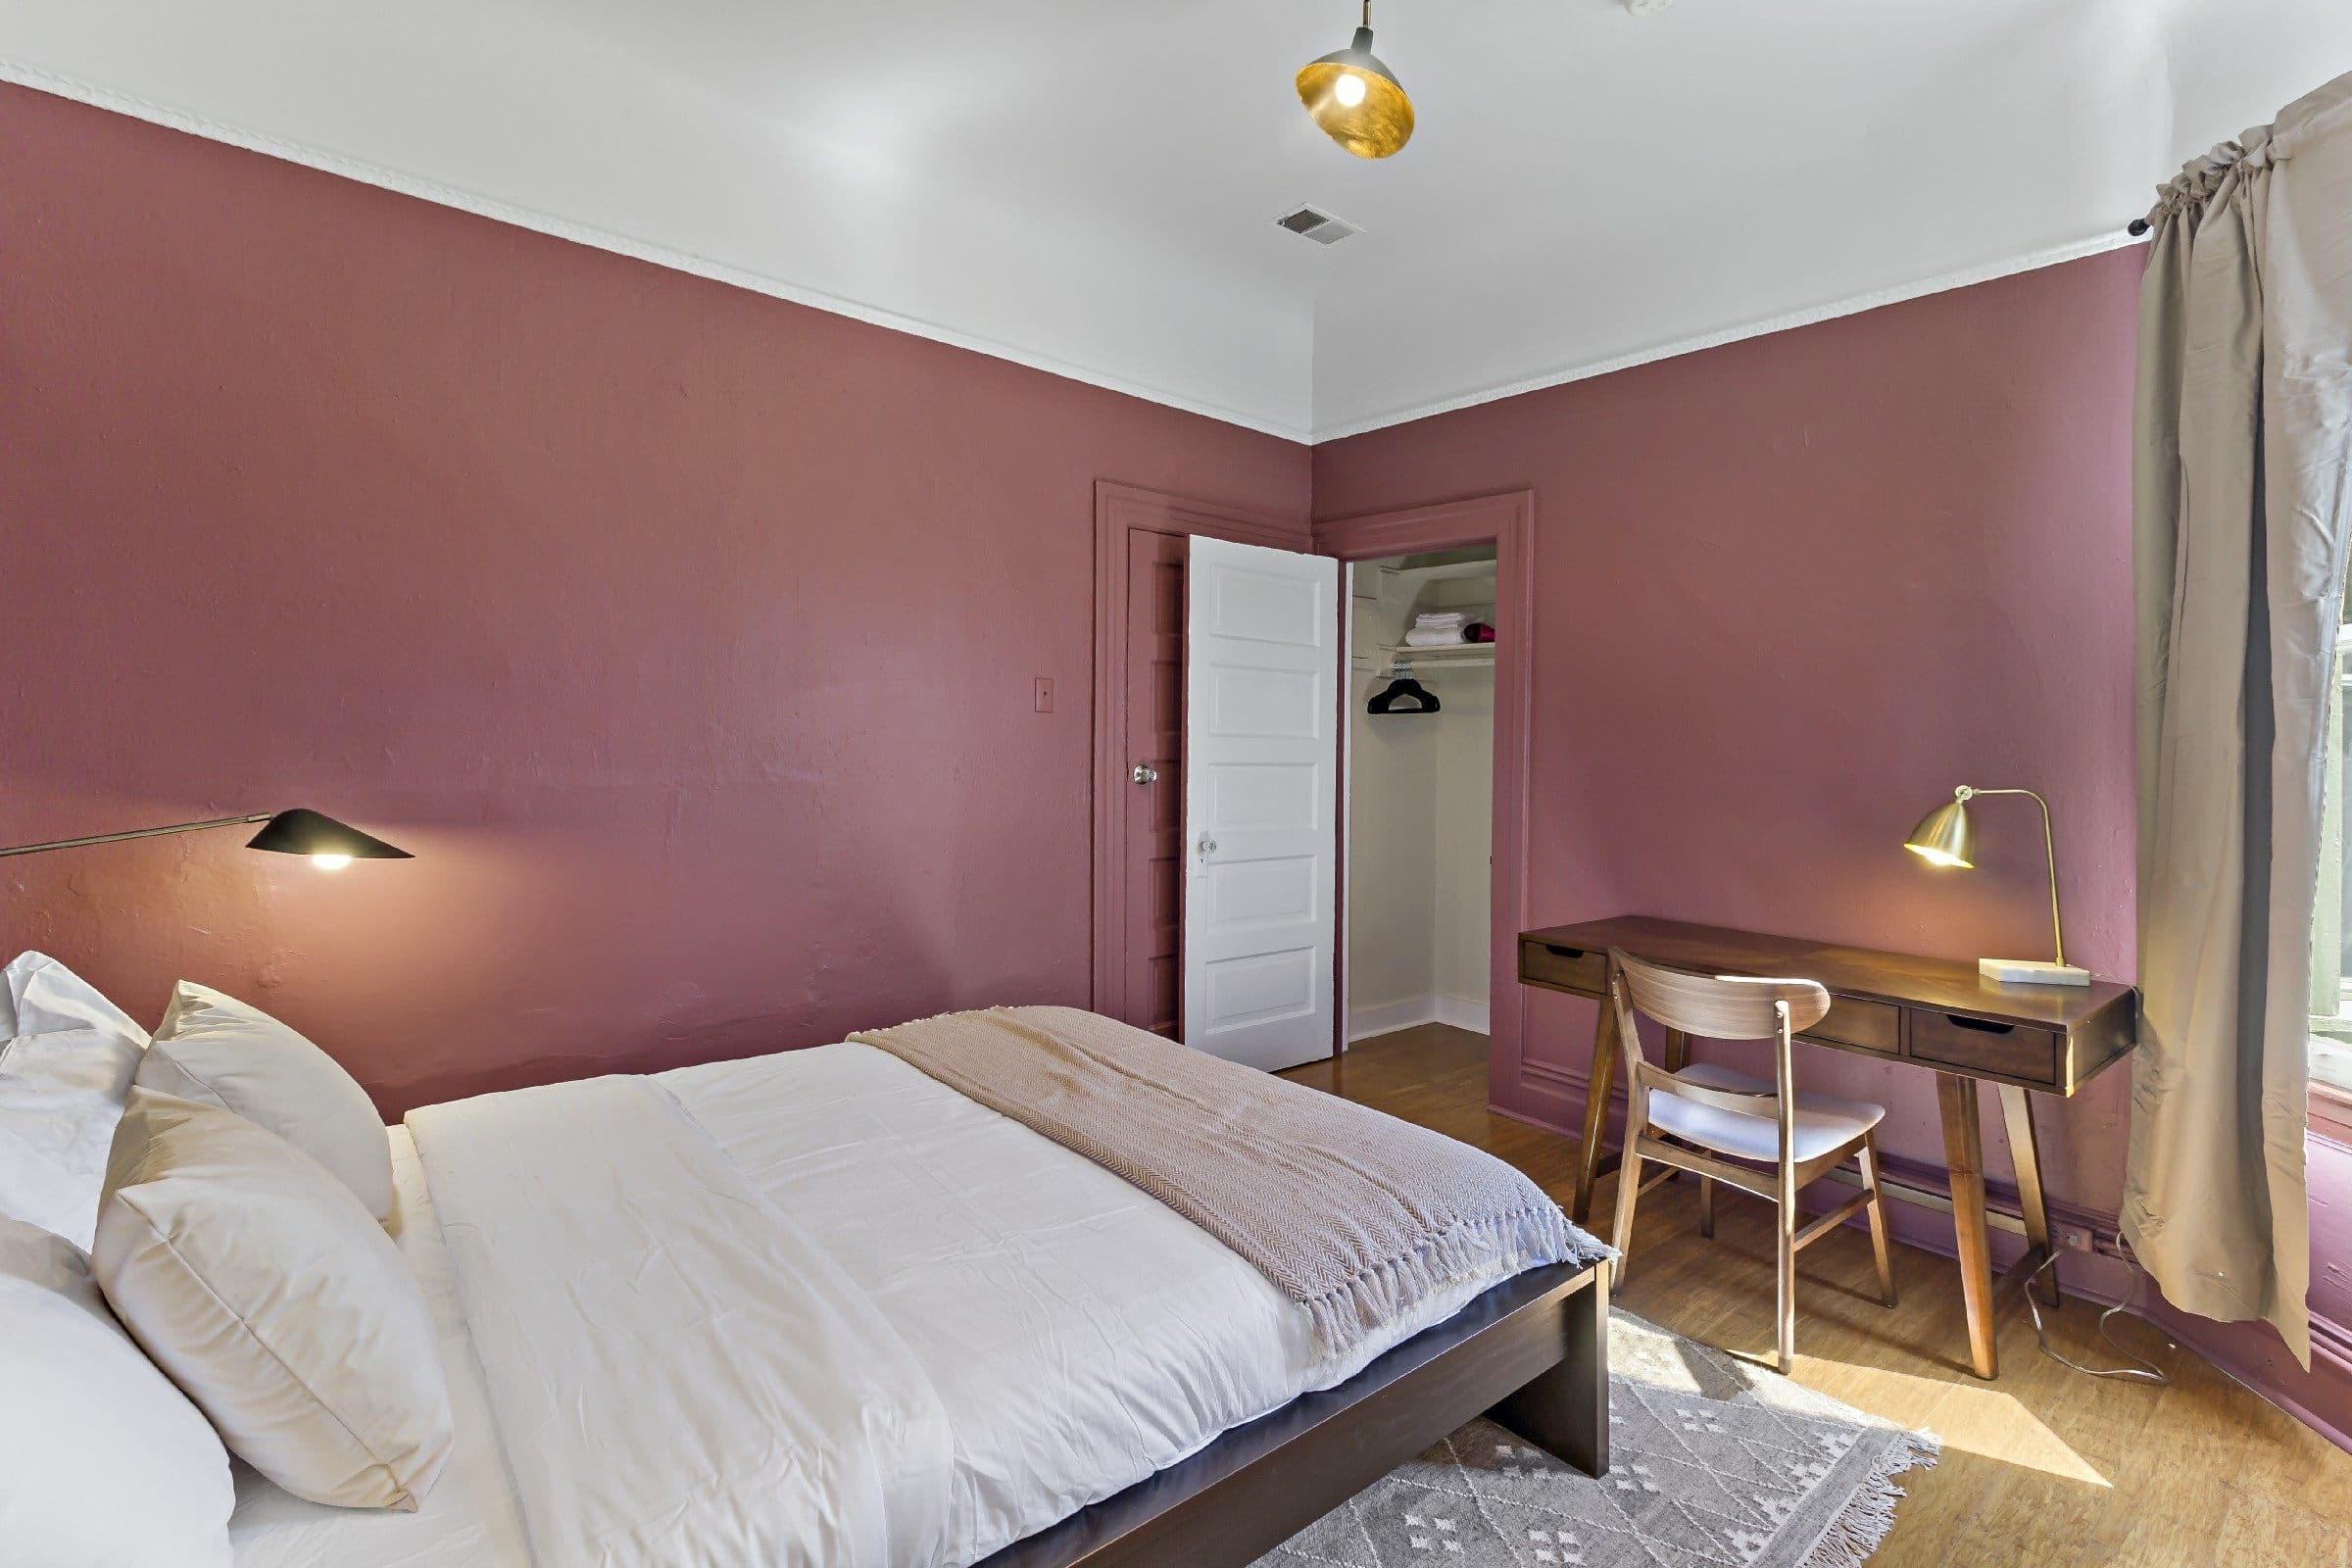 Photo 2 of #903: Queen Bedroom C at June Homes